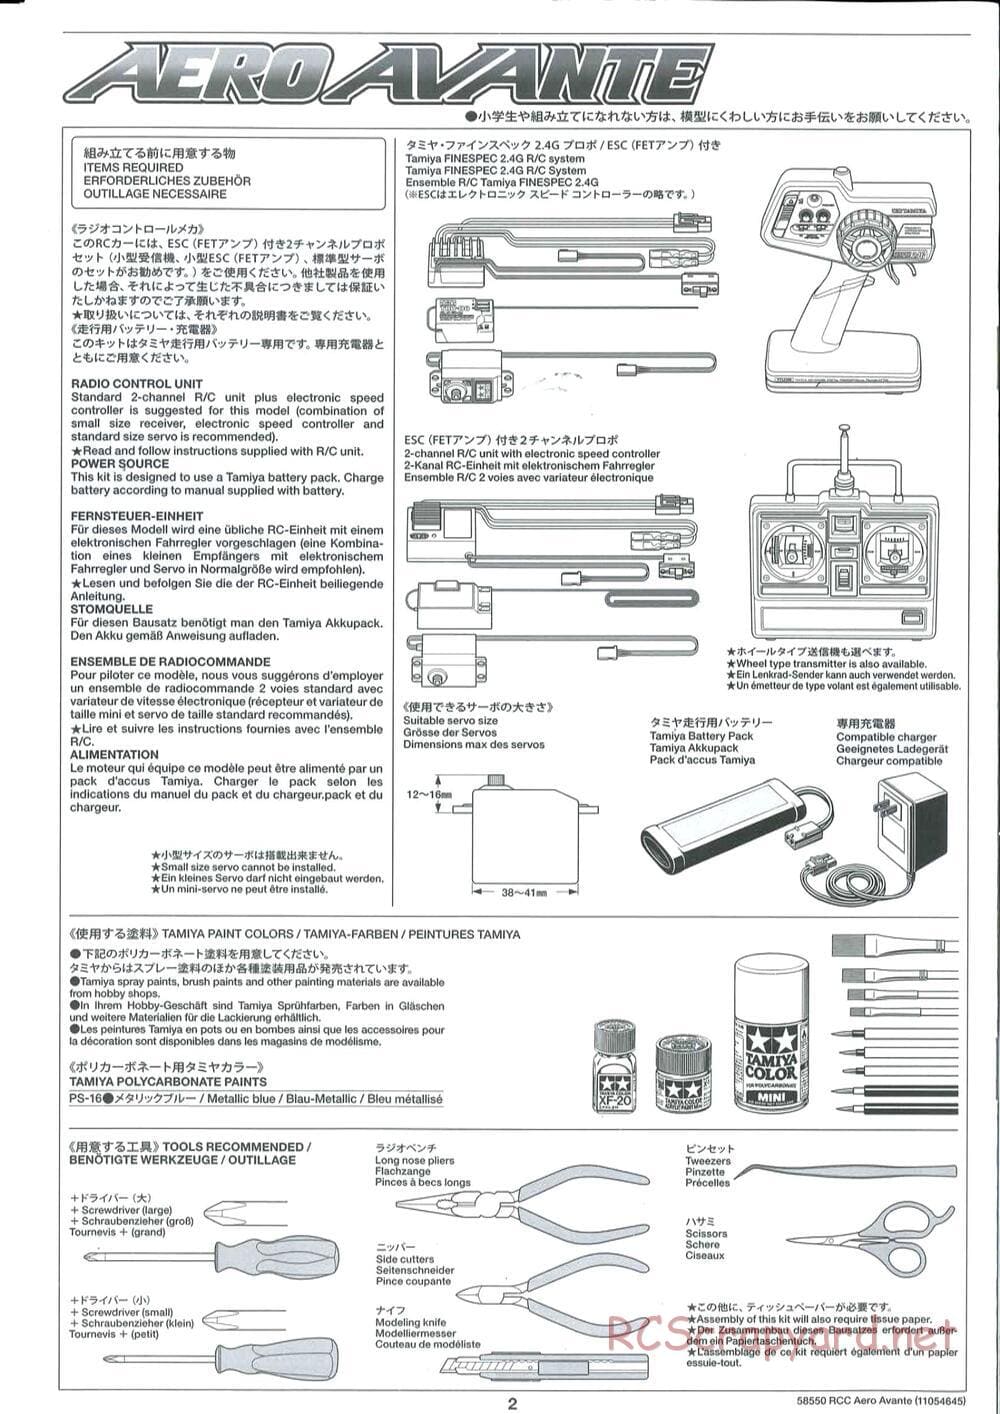 Tamiya - Aero Avante Chassis - Manual - Page 2